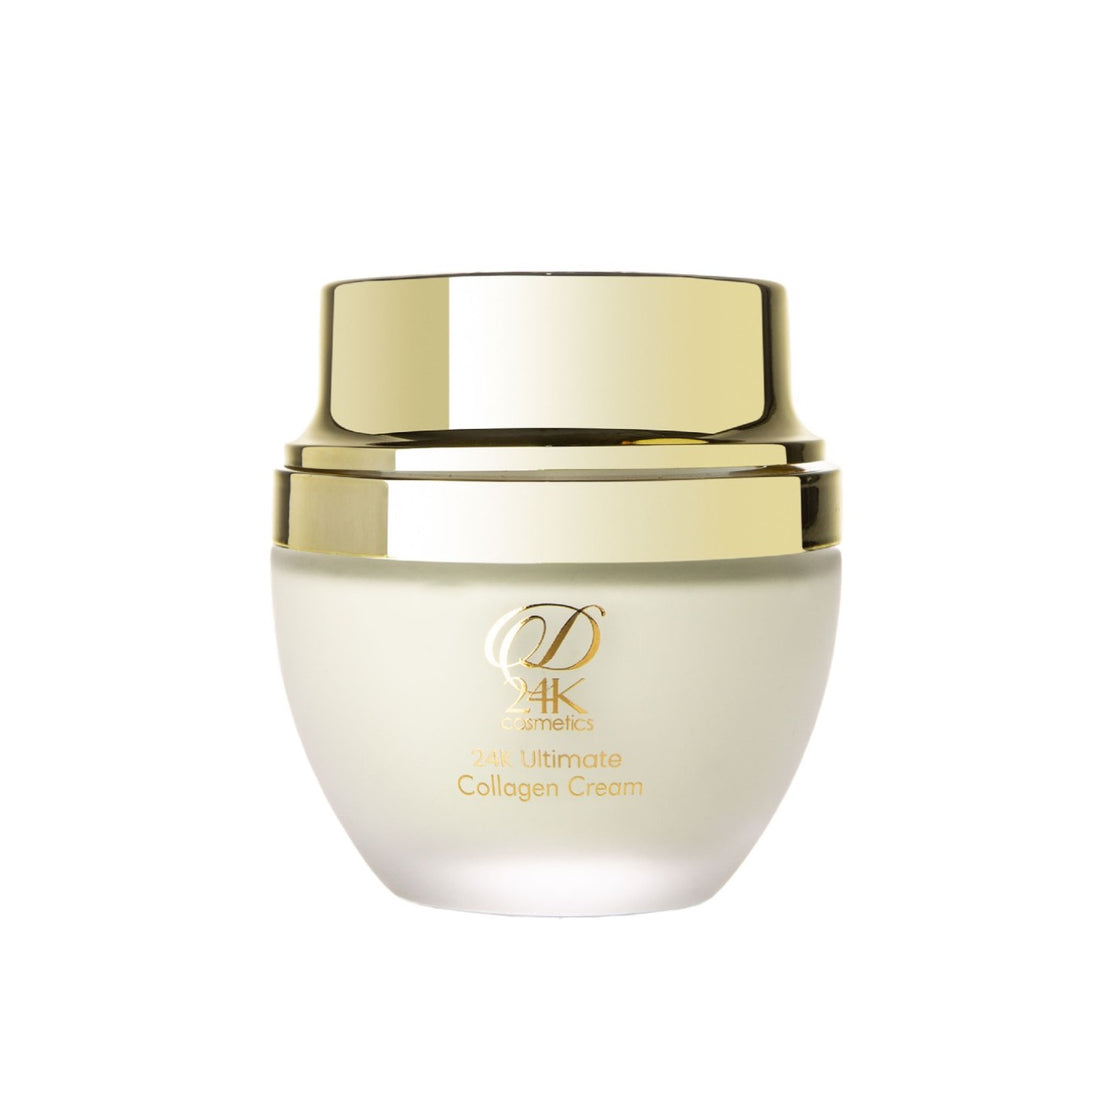 24K Ultimate Collagen Cream